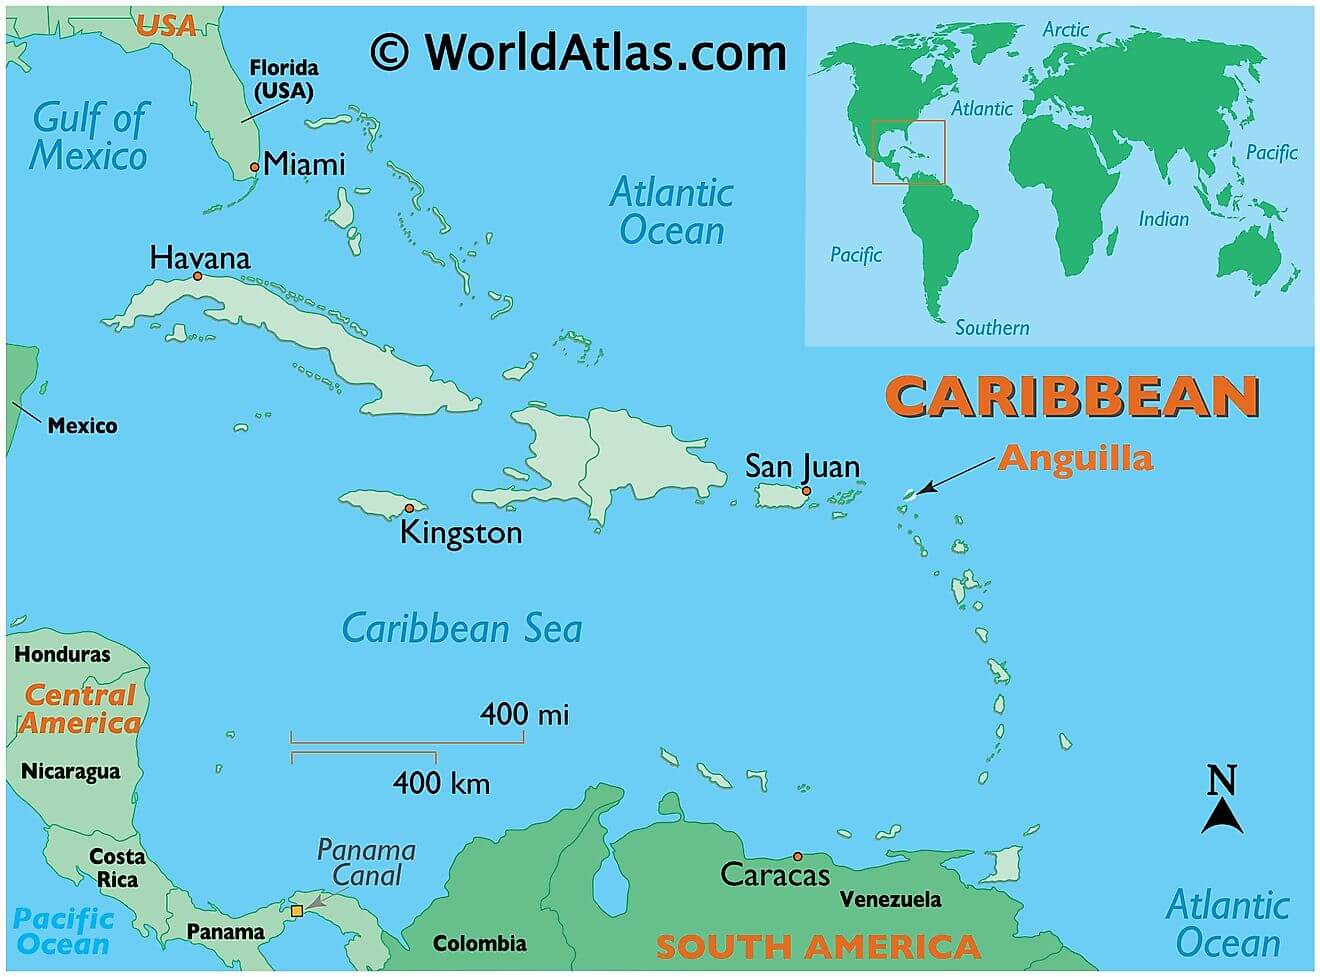 Anguilla ở đâu?